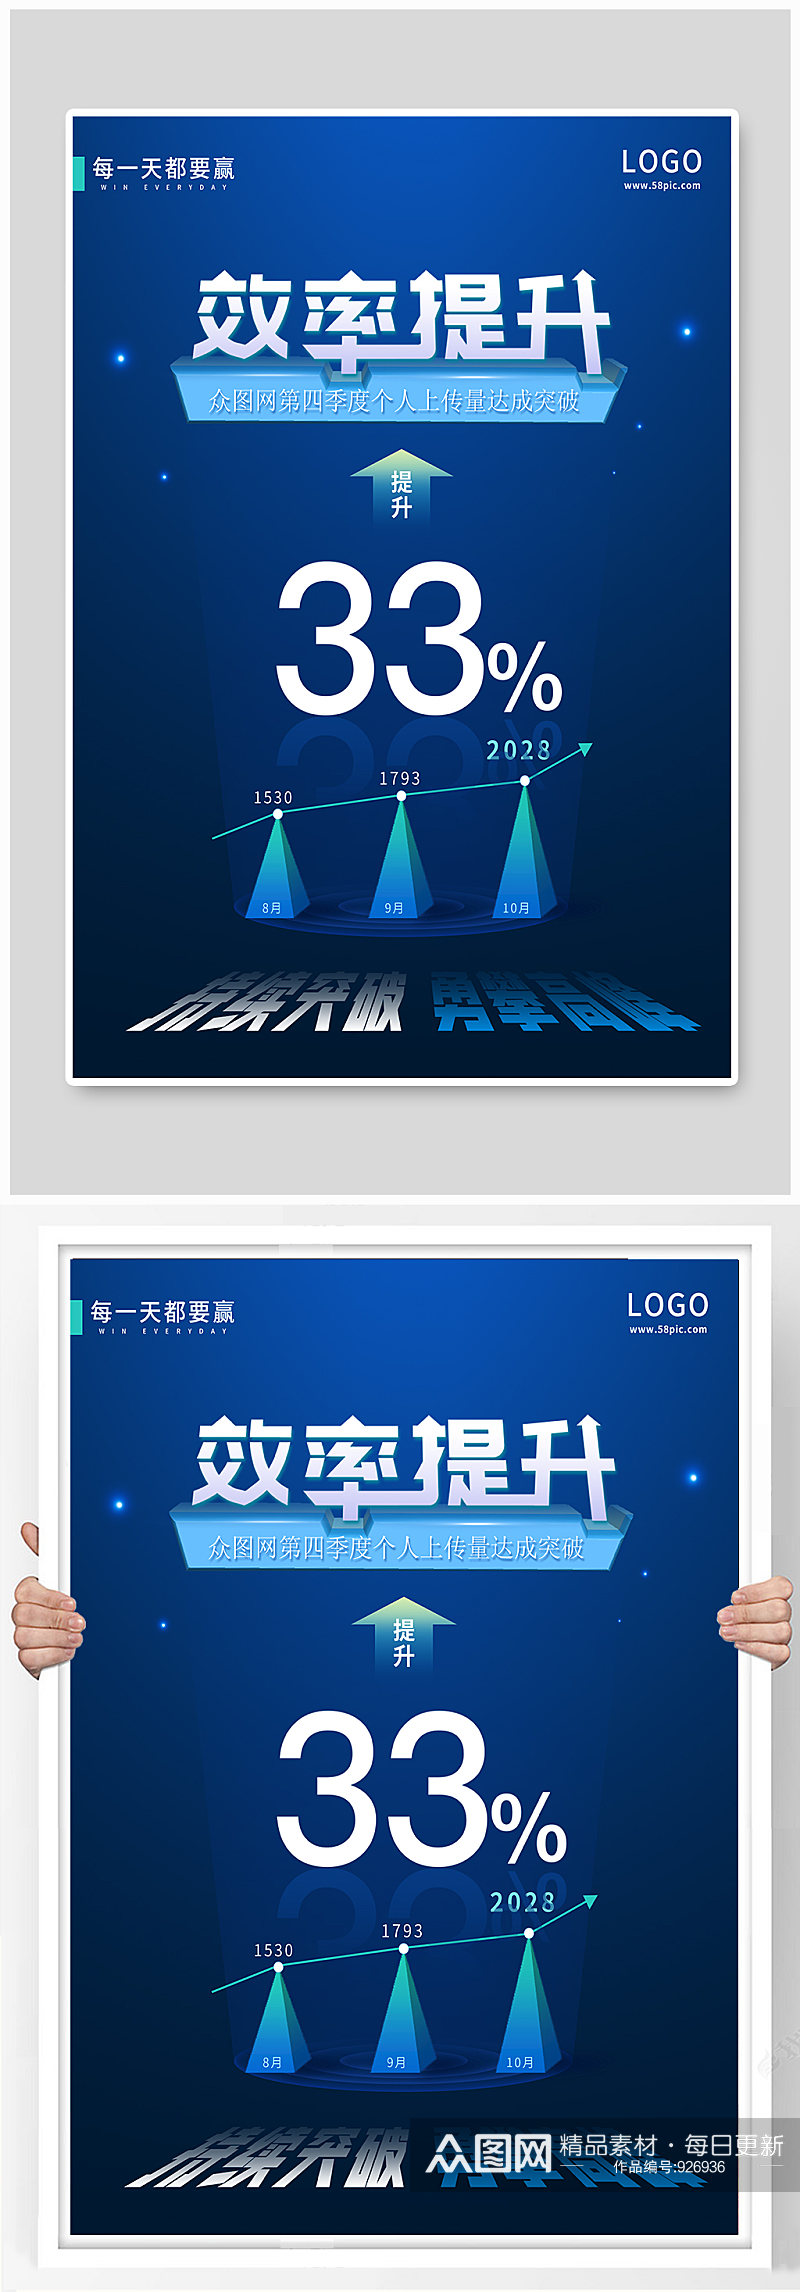 蓝色科技简约企业文化宣传海报素材